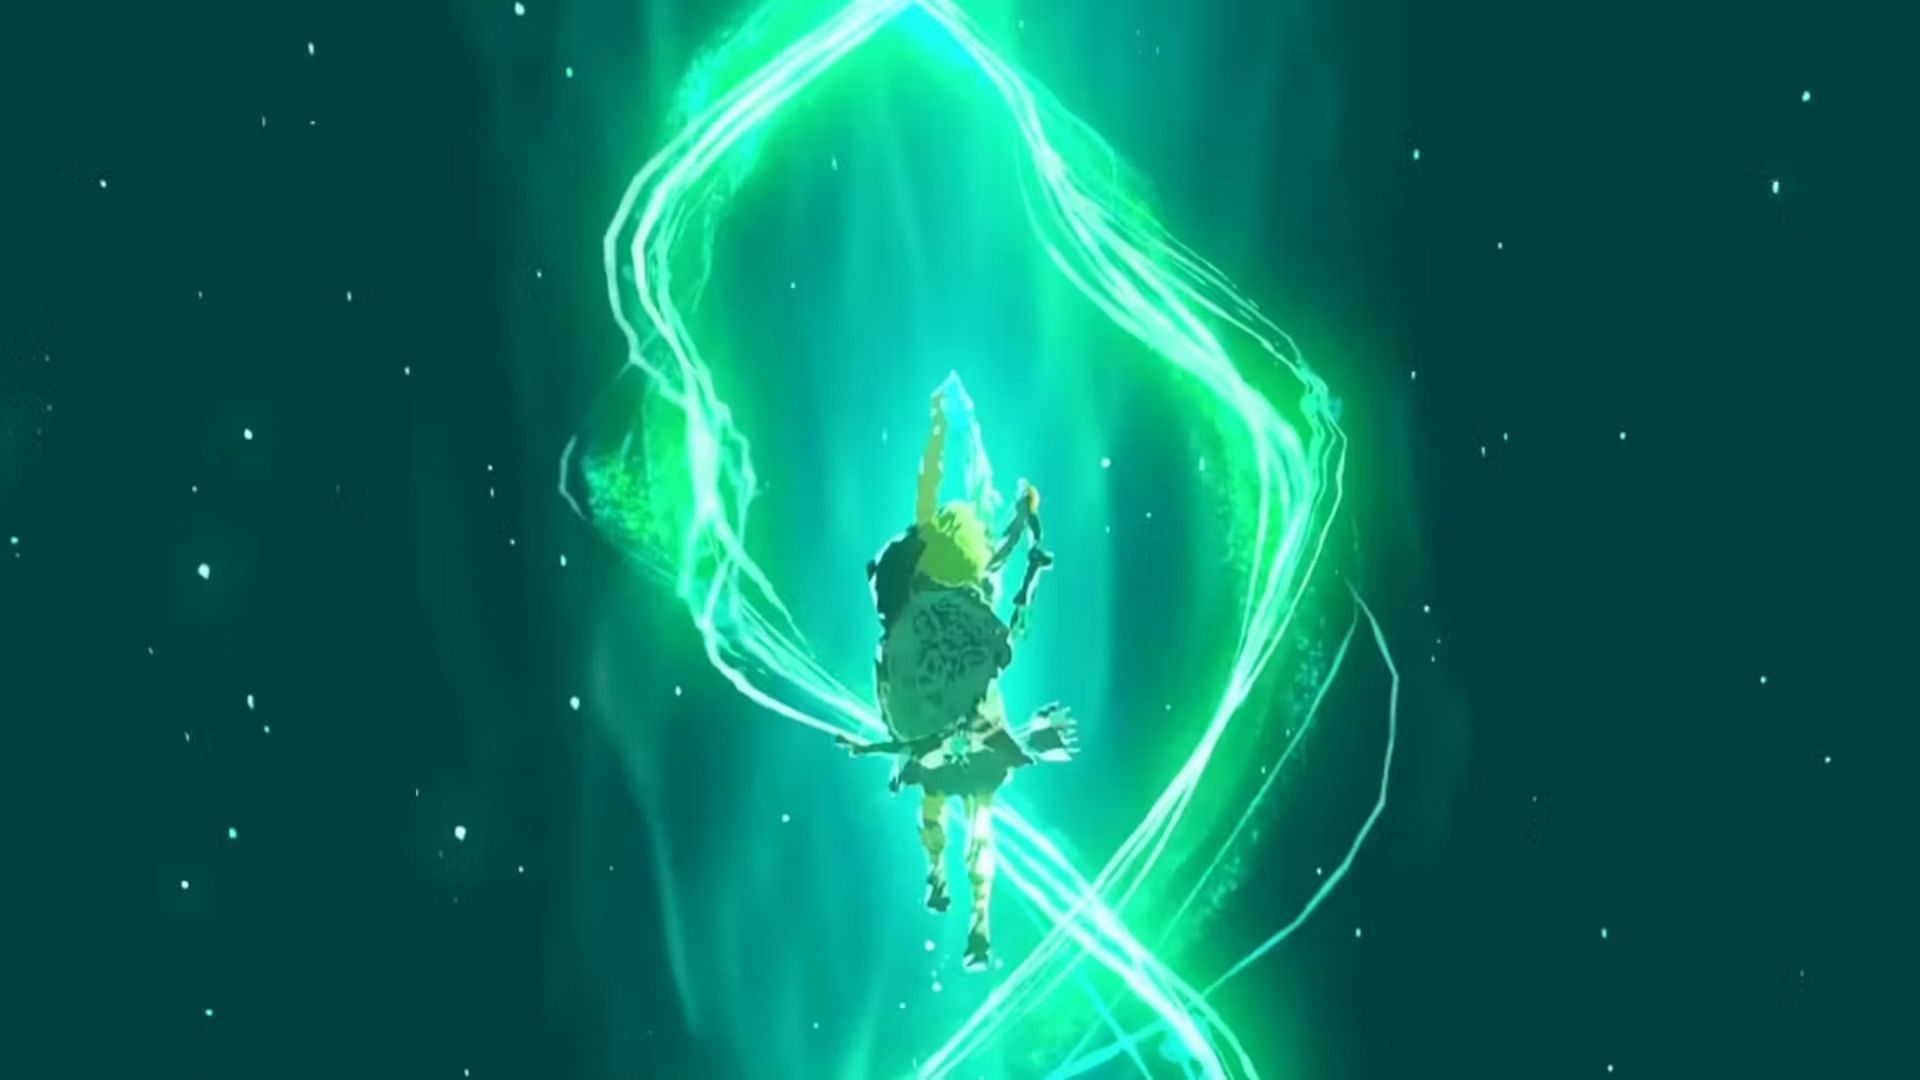 Link using ascend (Image via Nintendo)